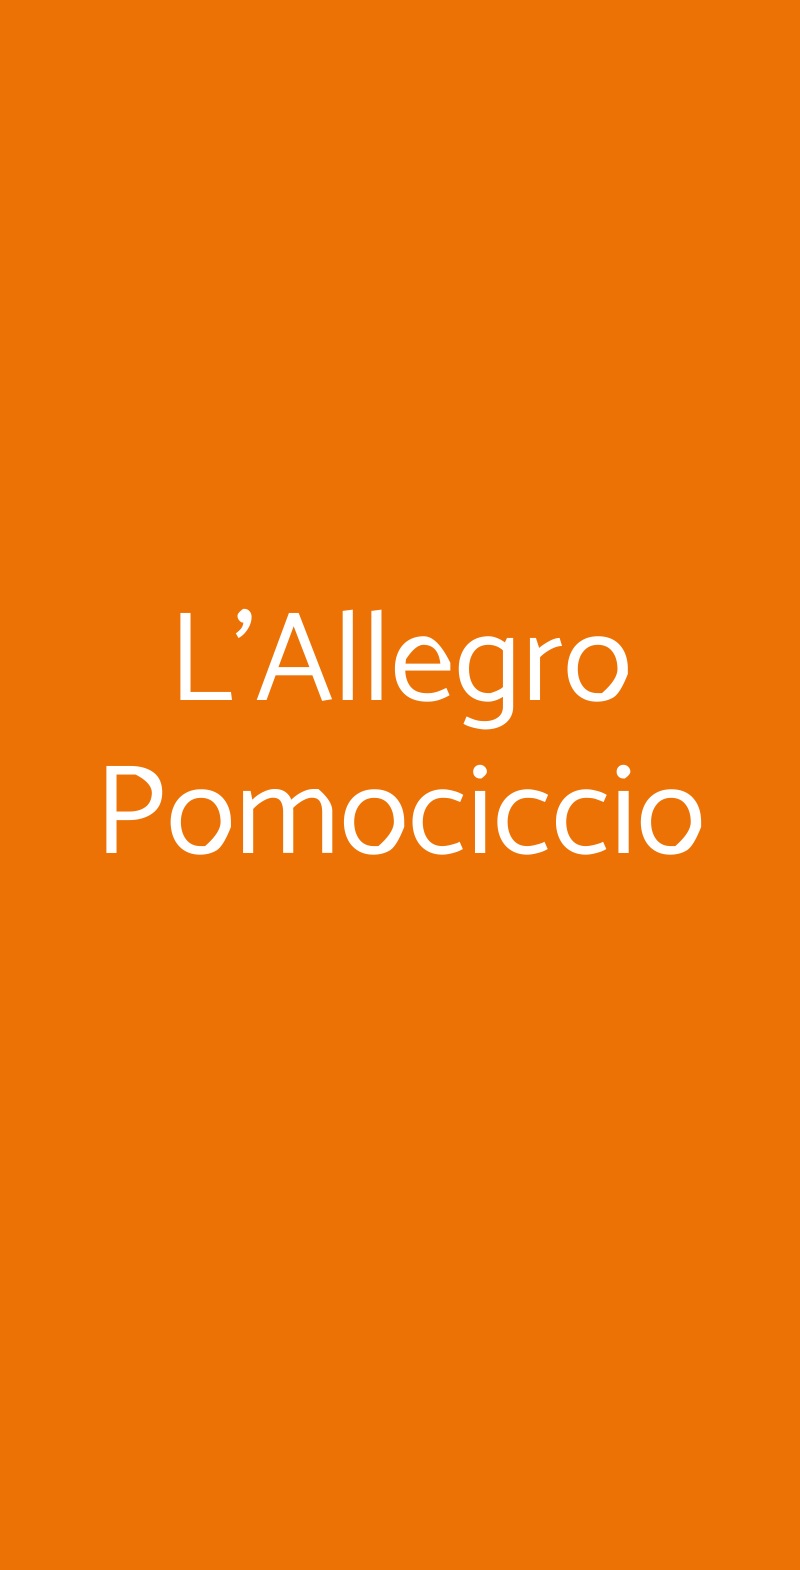 L'Allegro Pomociccio Venezia menù 1 pagina